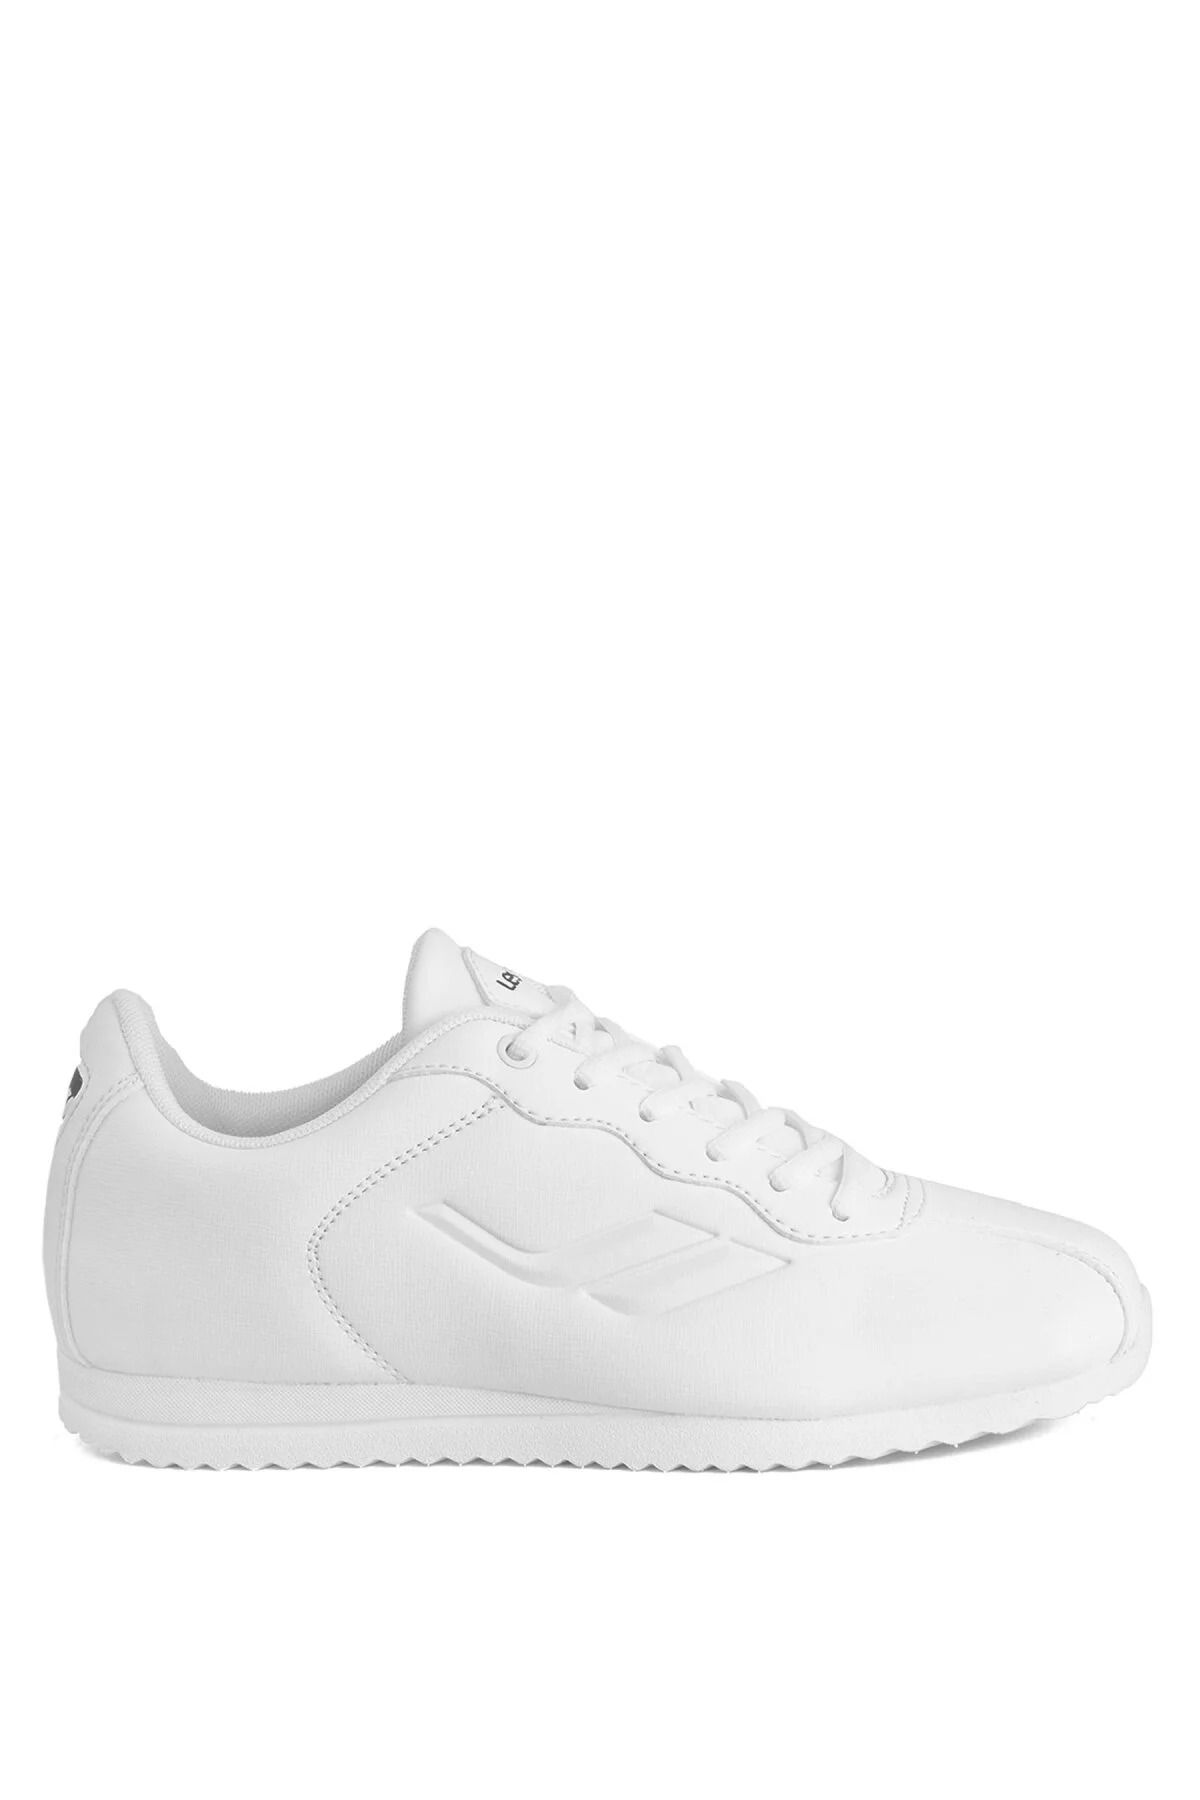 Lescon Neptün 4 Erkek Beyaz Sneaker Ayakkabı